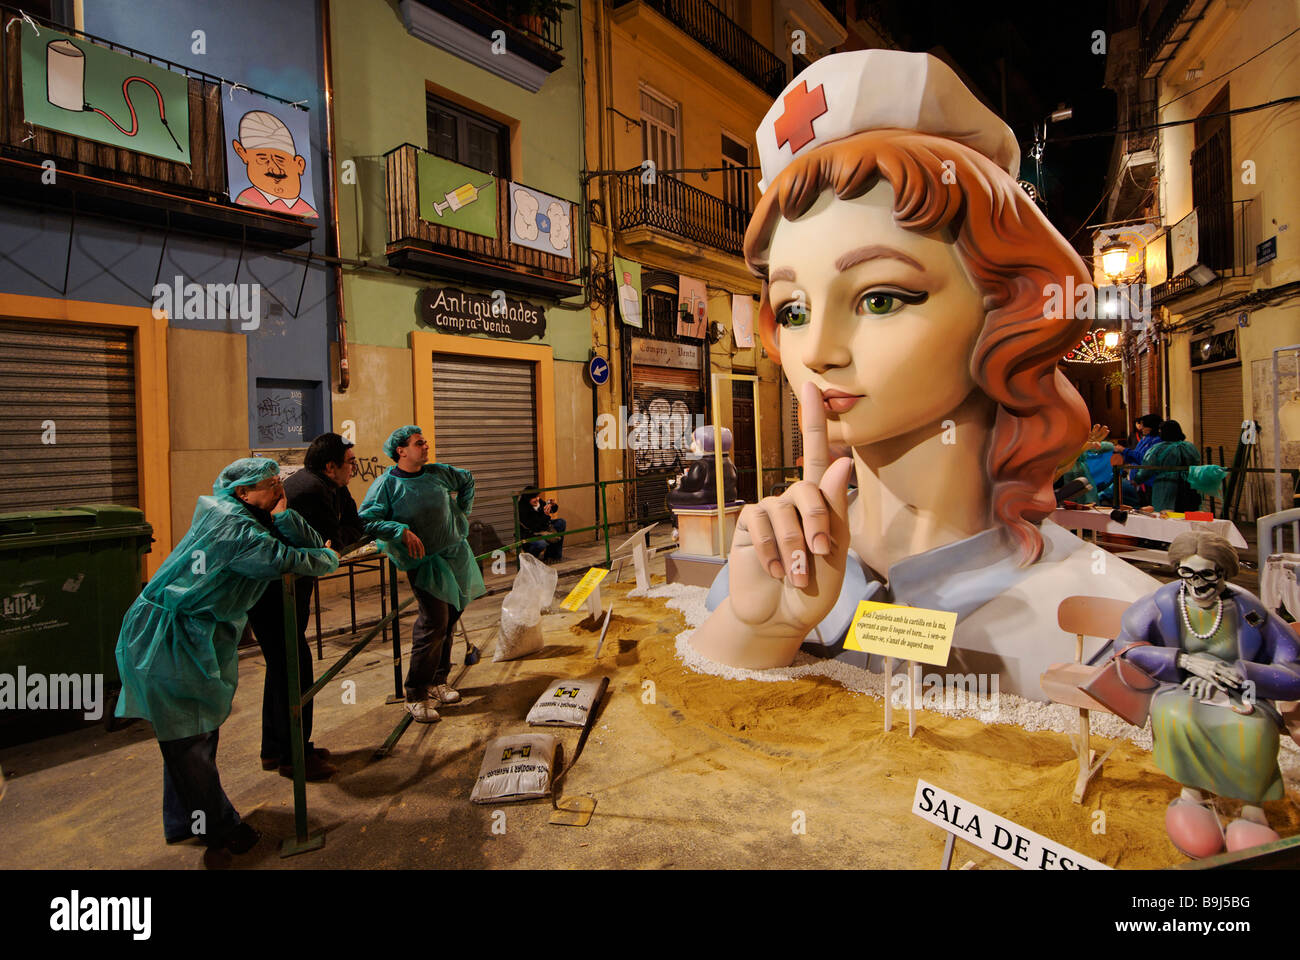 Las finitions sont apportées à une sculpture Ninot construit dans les rues de Valence Fallas pour célébrer l'Espagne Banque D'Images